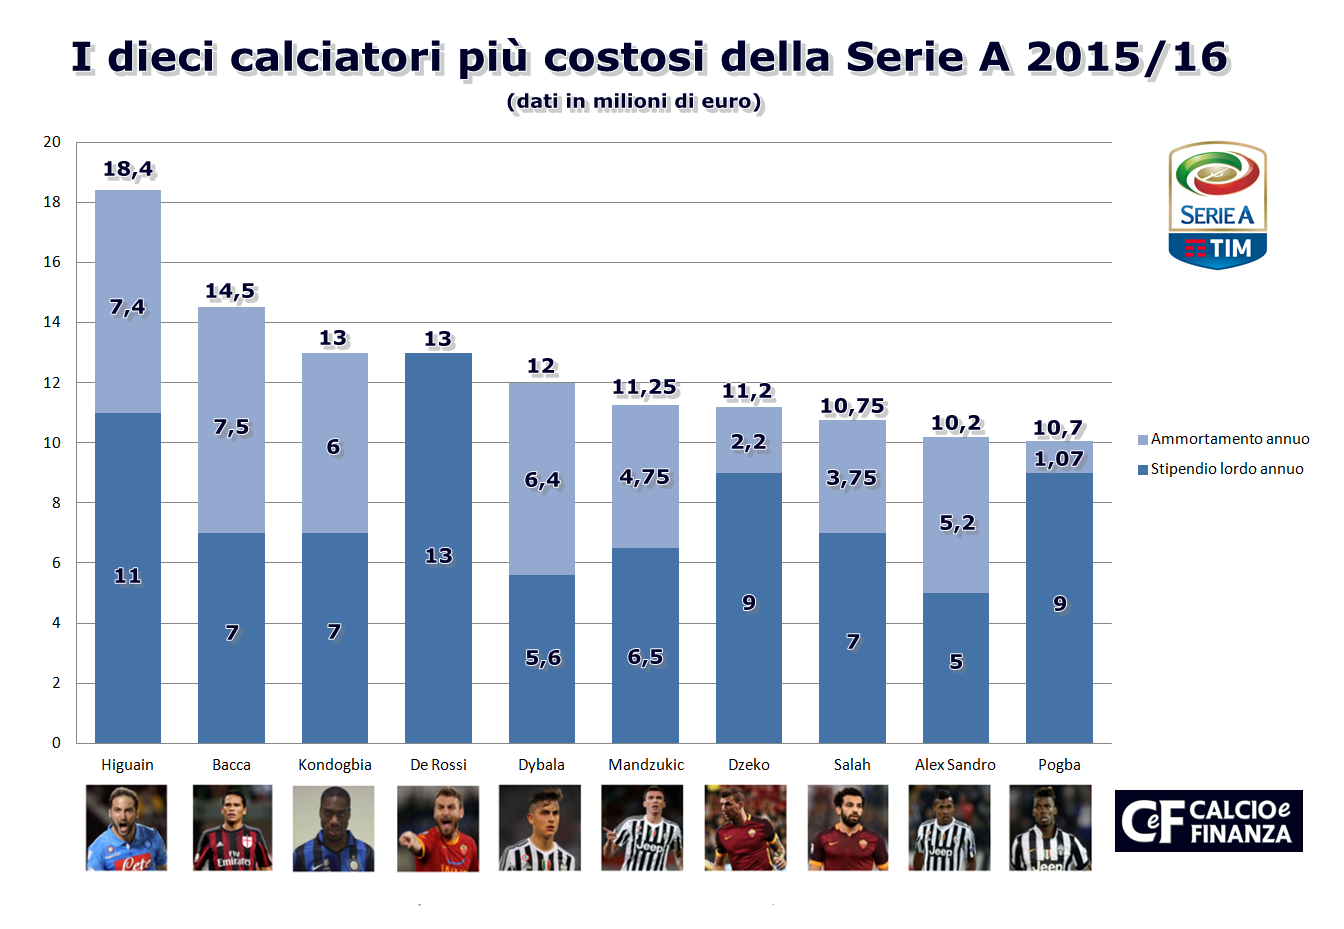 Calciatori più costosi Serie A 2015/16